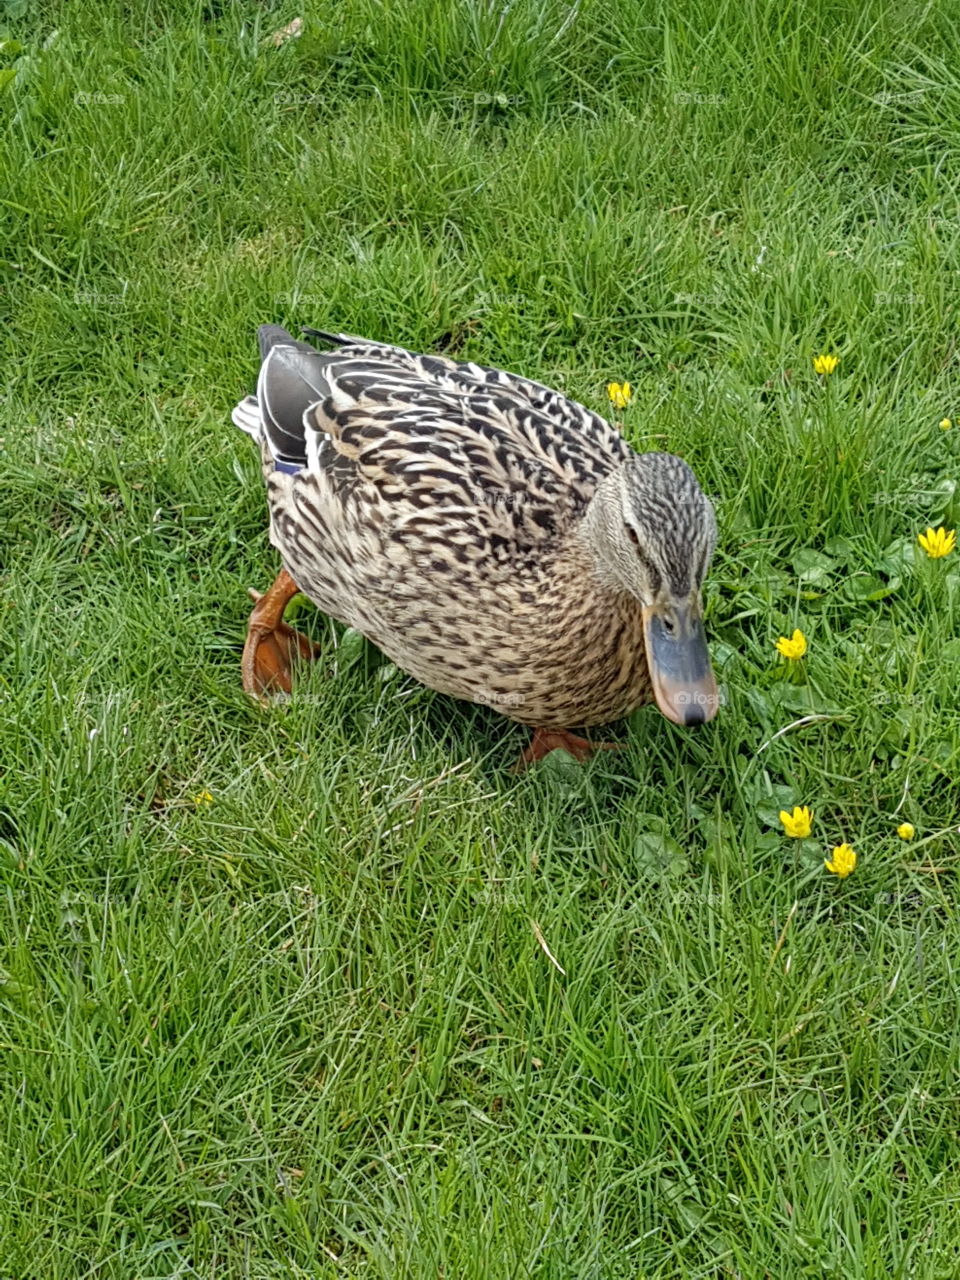 duck
nature
grass